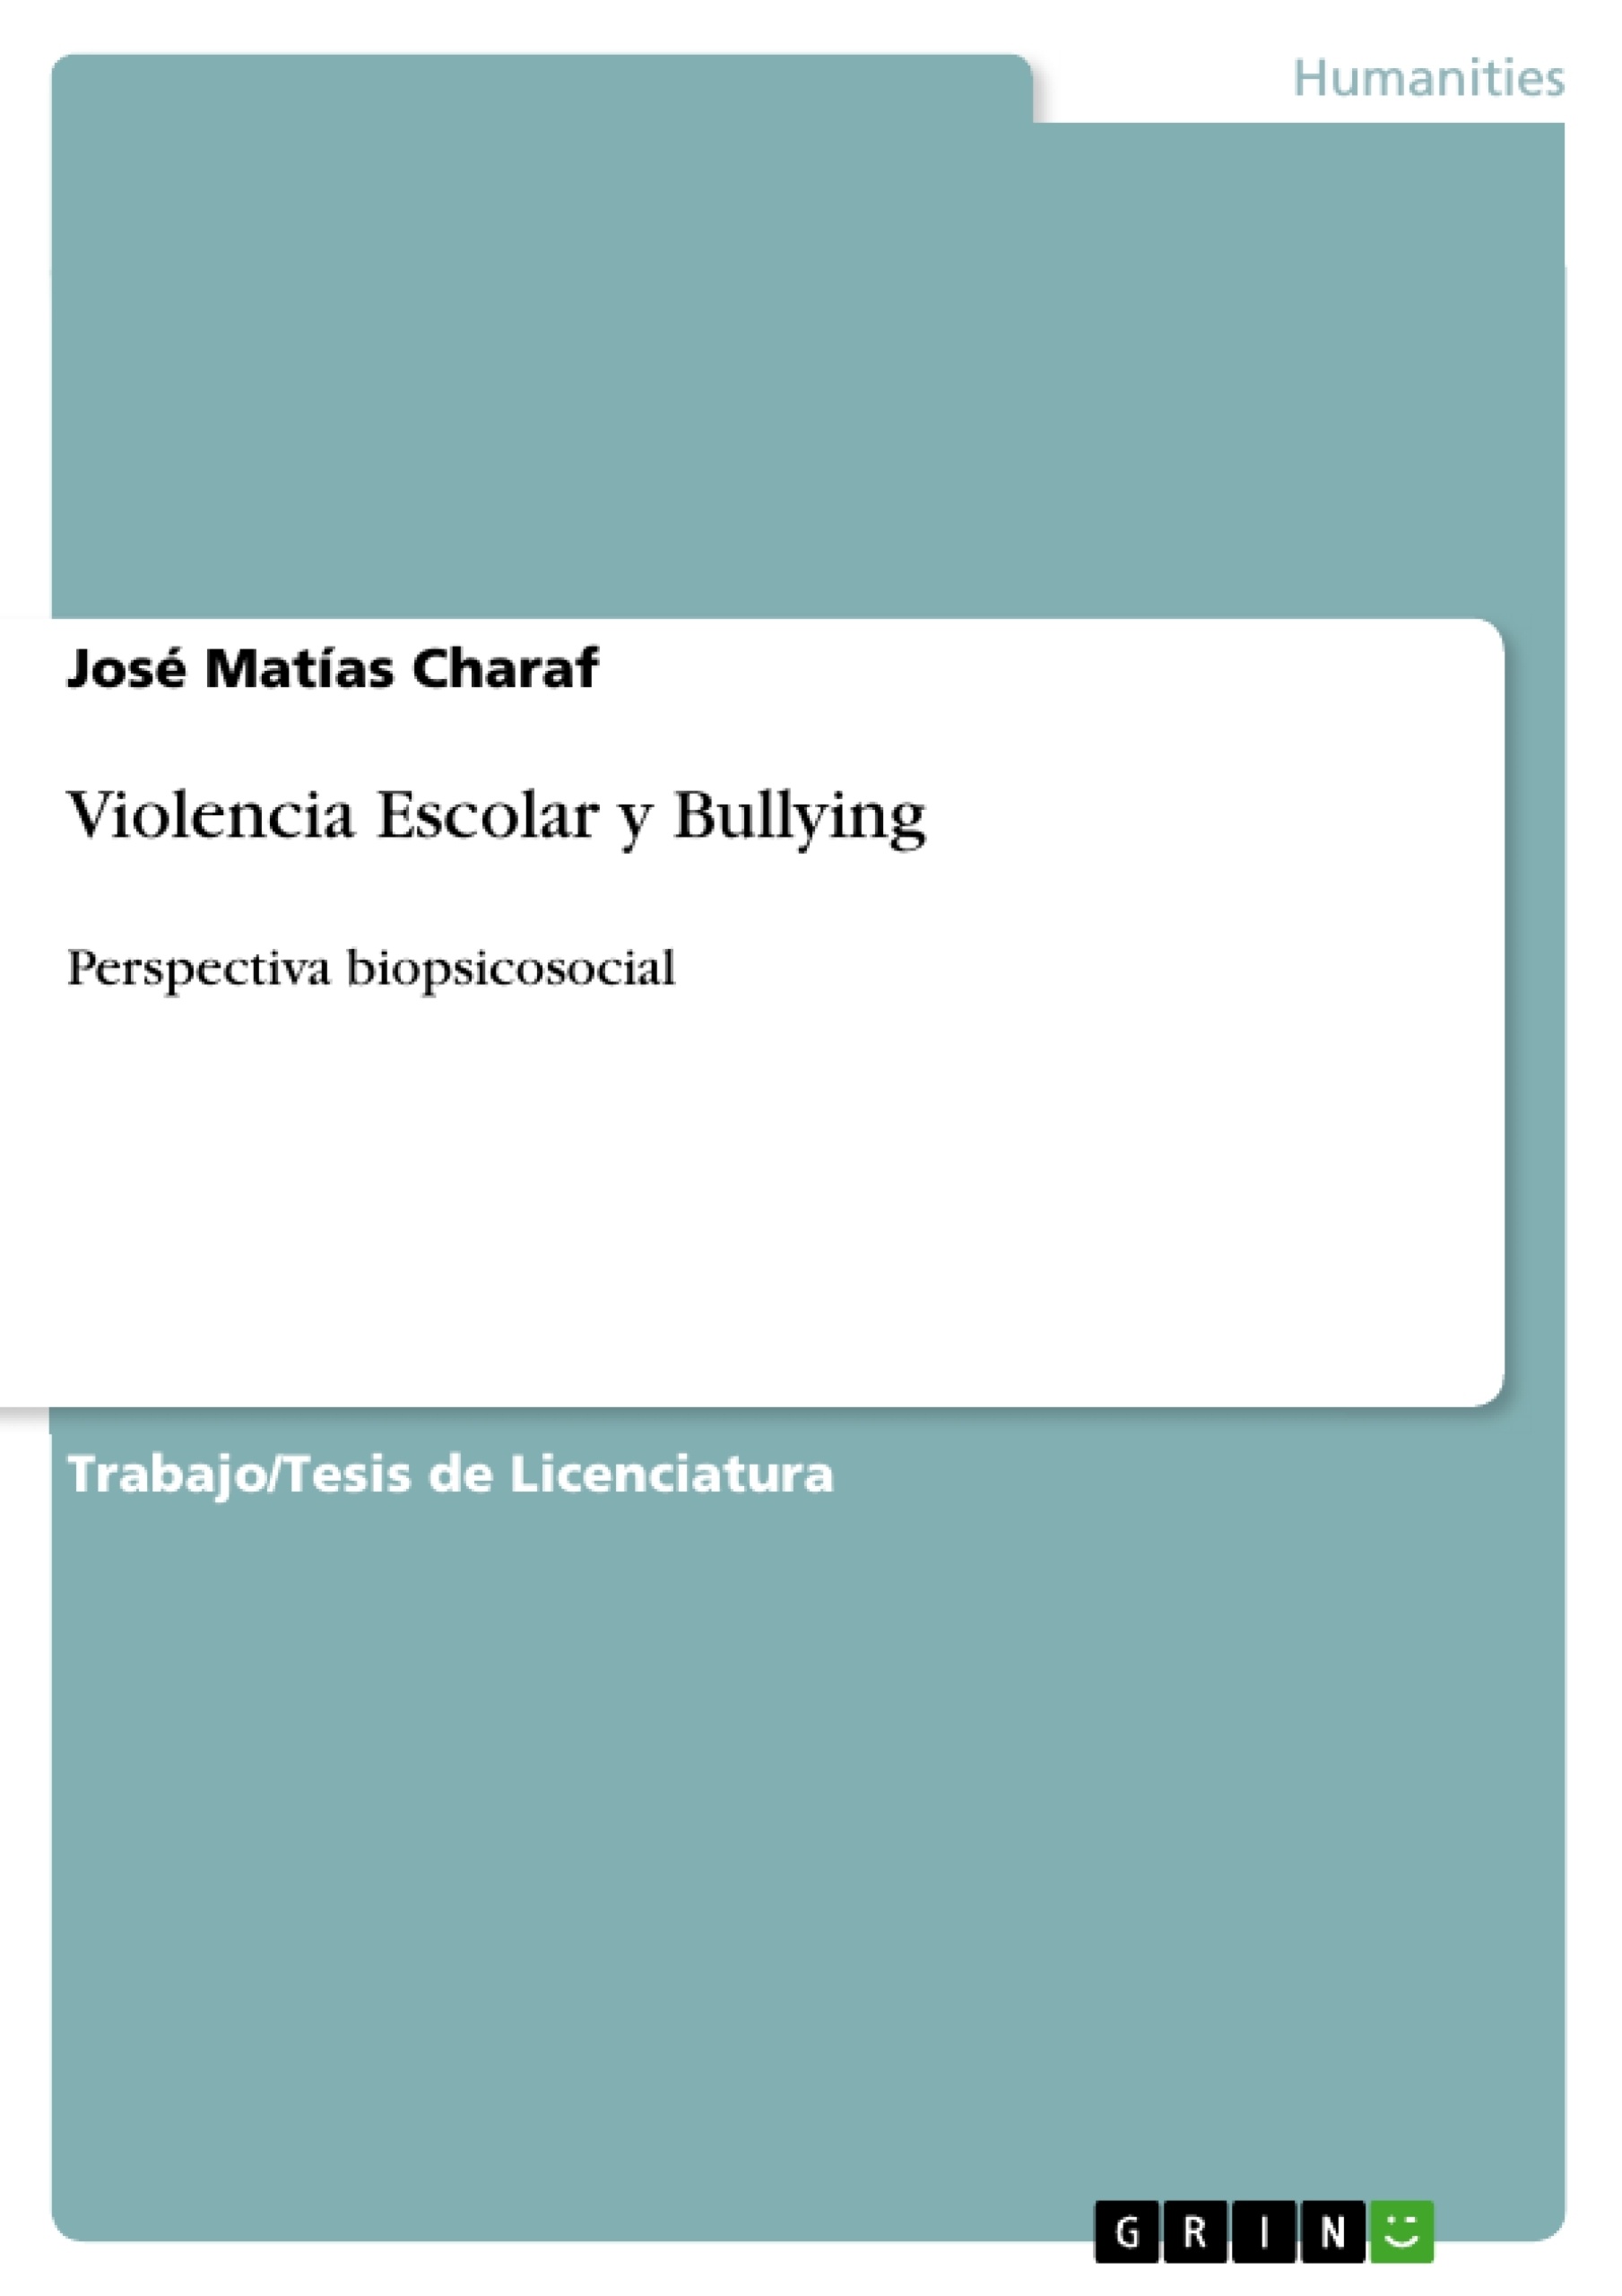 Titre: Violencia Escolar y Bullying